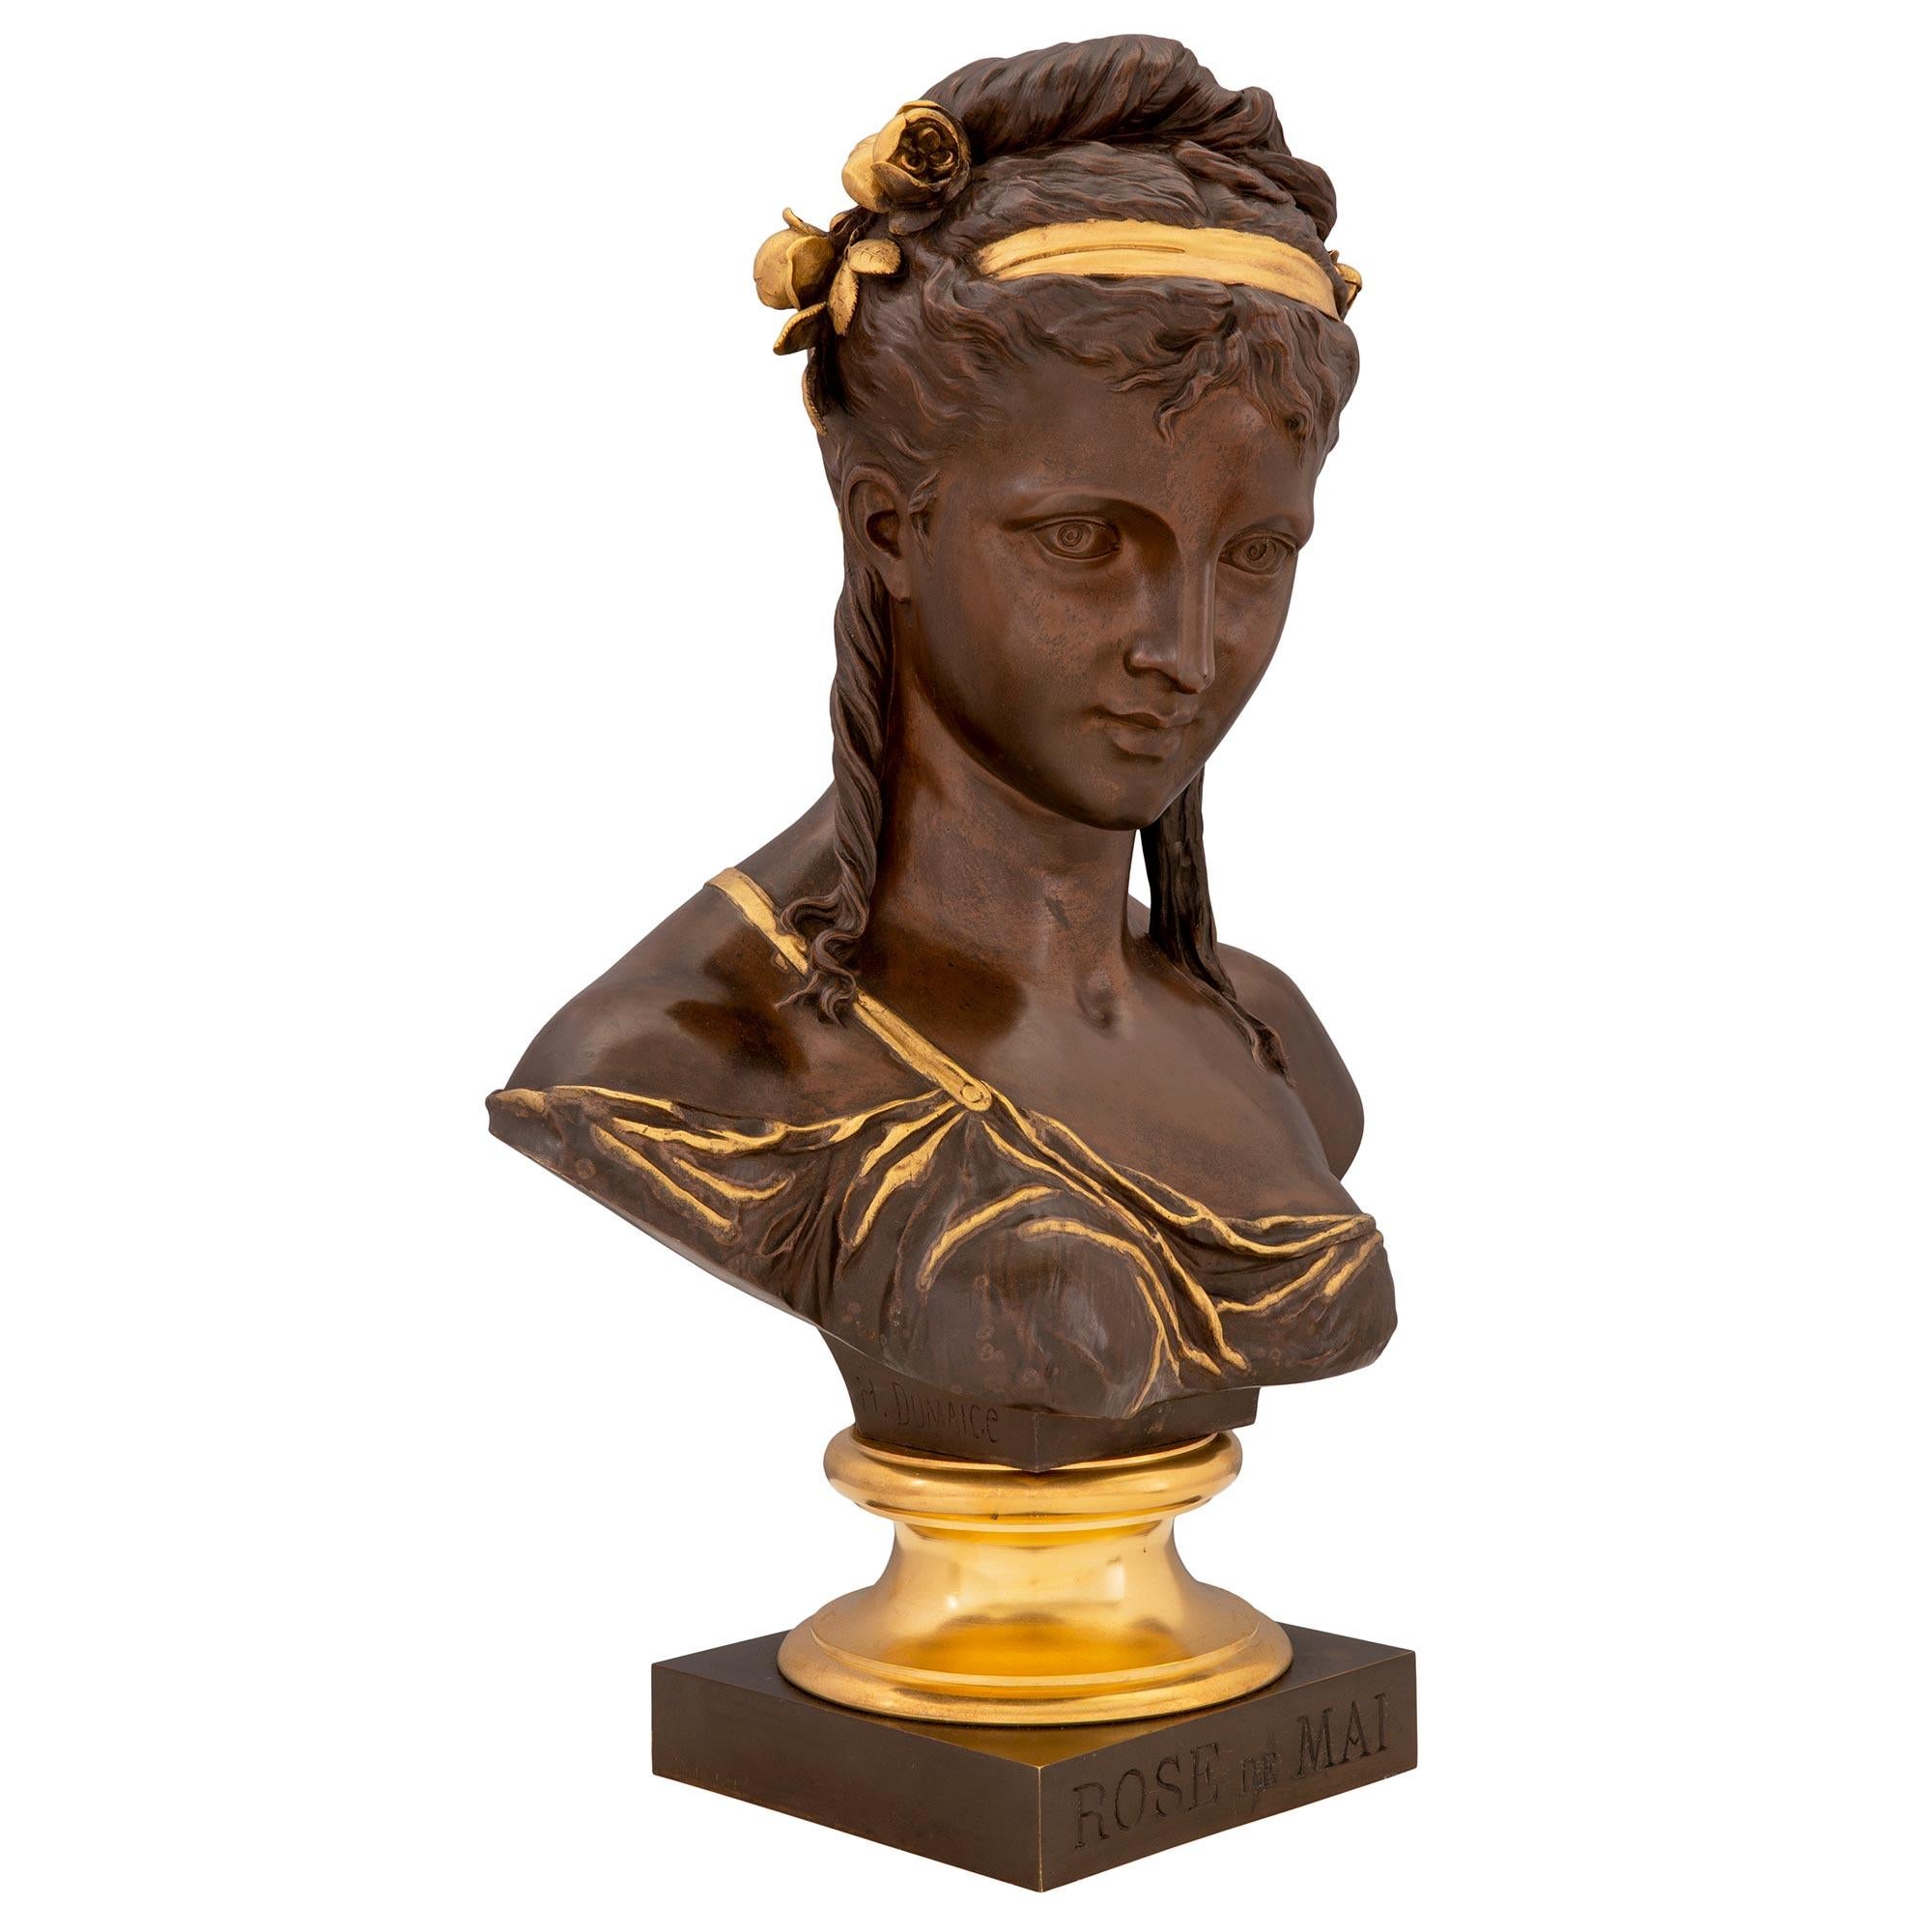 Superbe buste en bronze patiné et bronze doré de style Louis XVI, signé H. DUMAICE. Le buste est surmonté d'une base carrée en bronze patiné portant l'inscription ROSE de MAI et d'un socle en bronze doré tacheté. Le buste richement ciselé représente